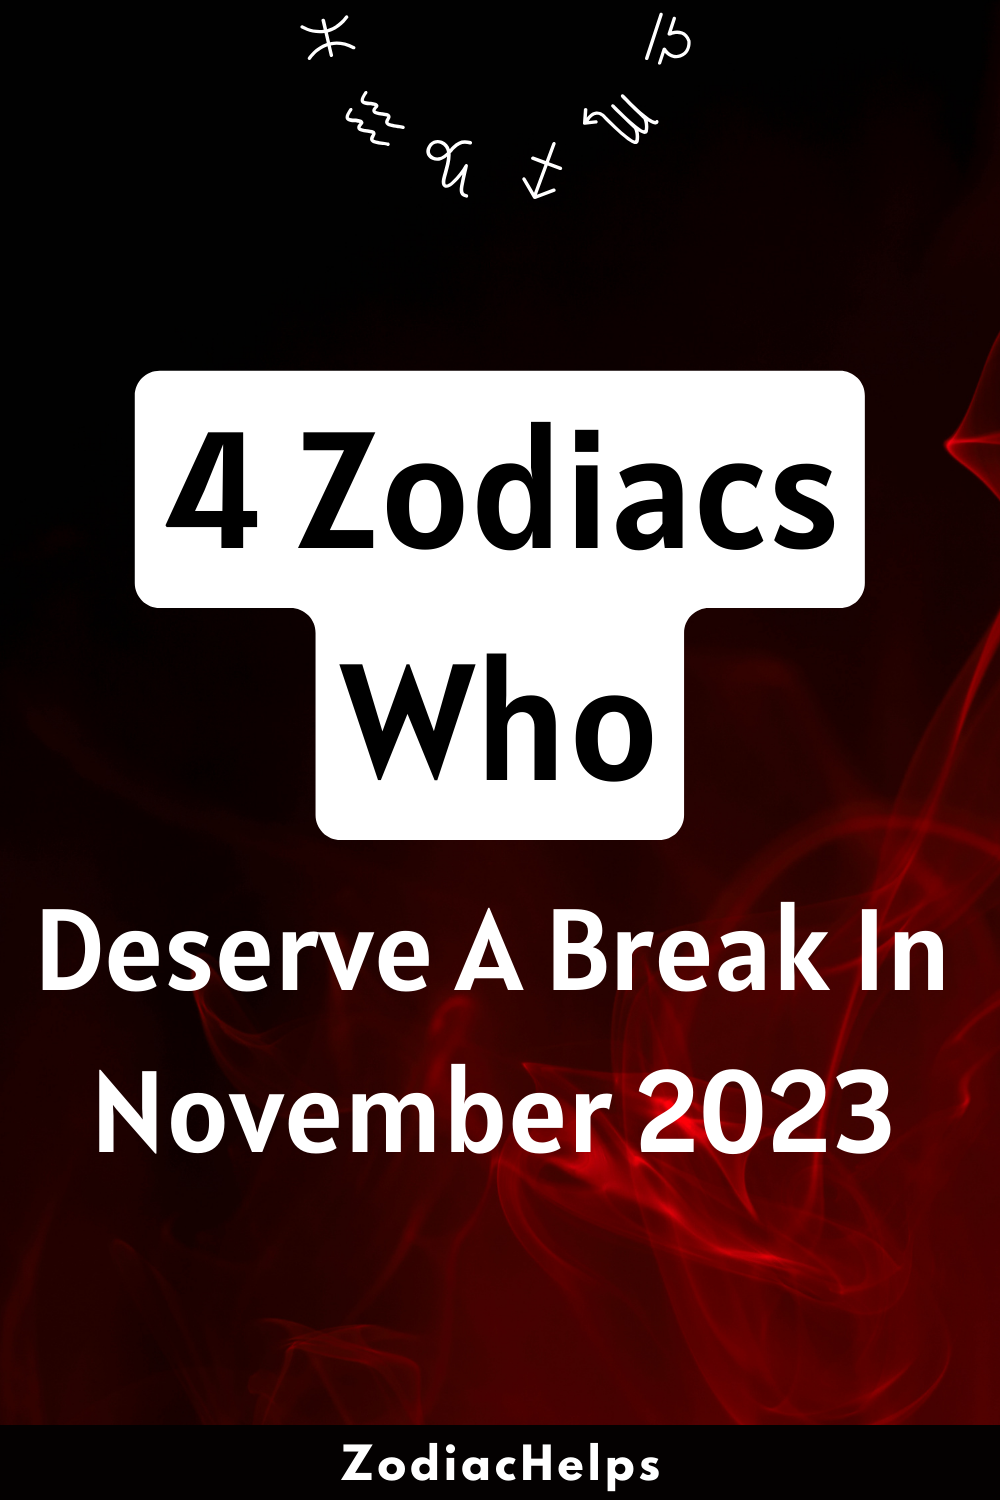 4 Zodiacs Who Deserve A Break In November 2023